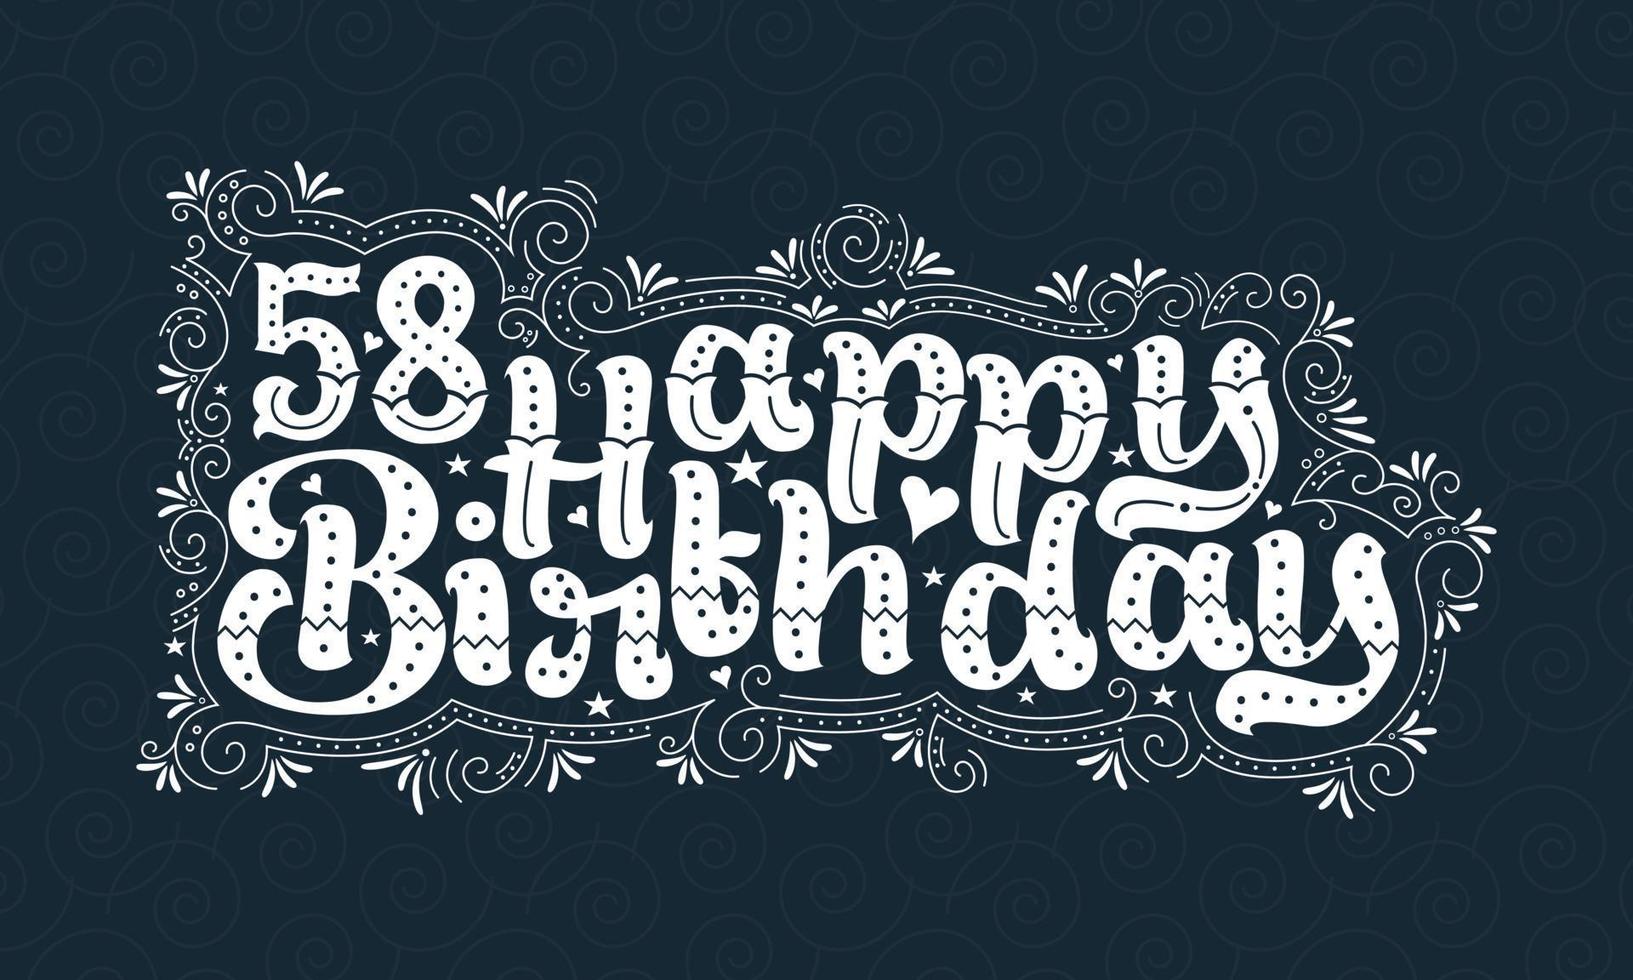 58e gelukkige verjaardag belettering, 58 jaar verjaardag mooi typografieontwerp met stippen, lijnen en bladeren. vector